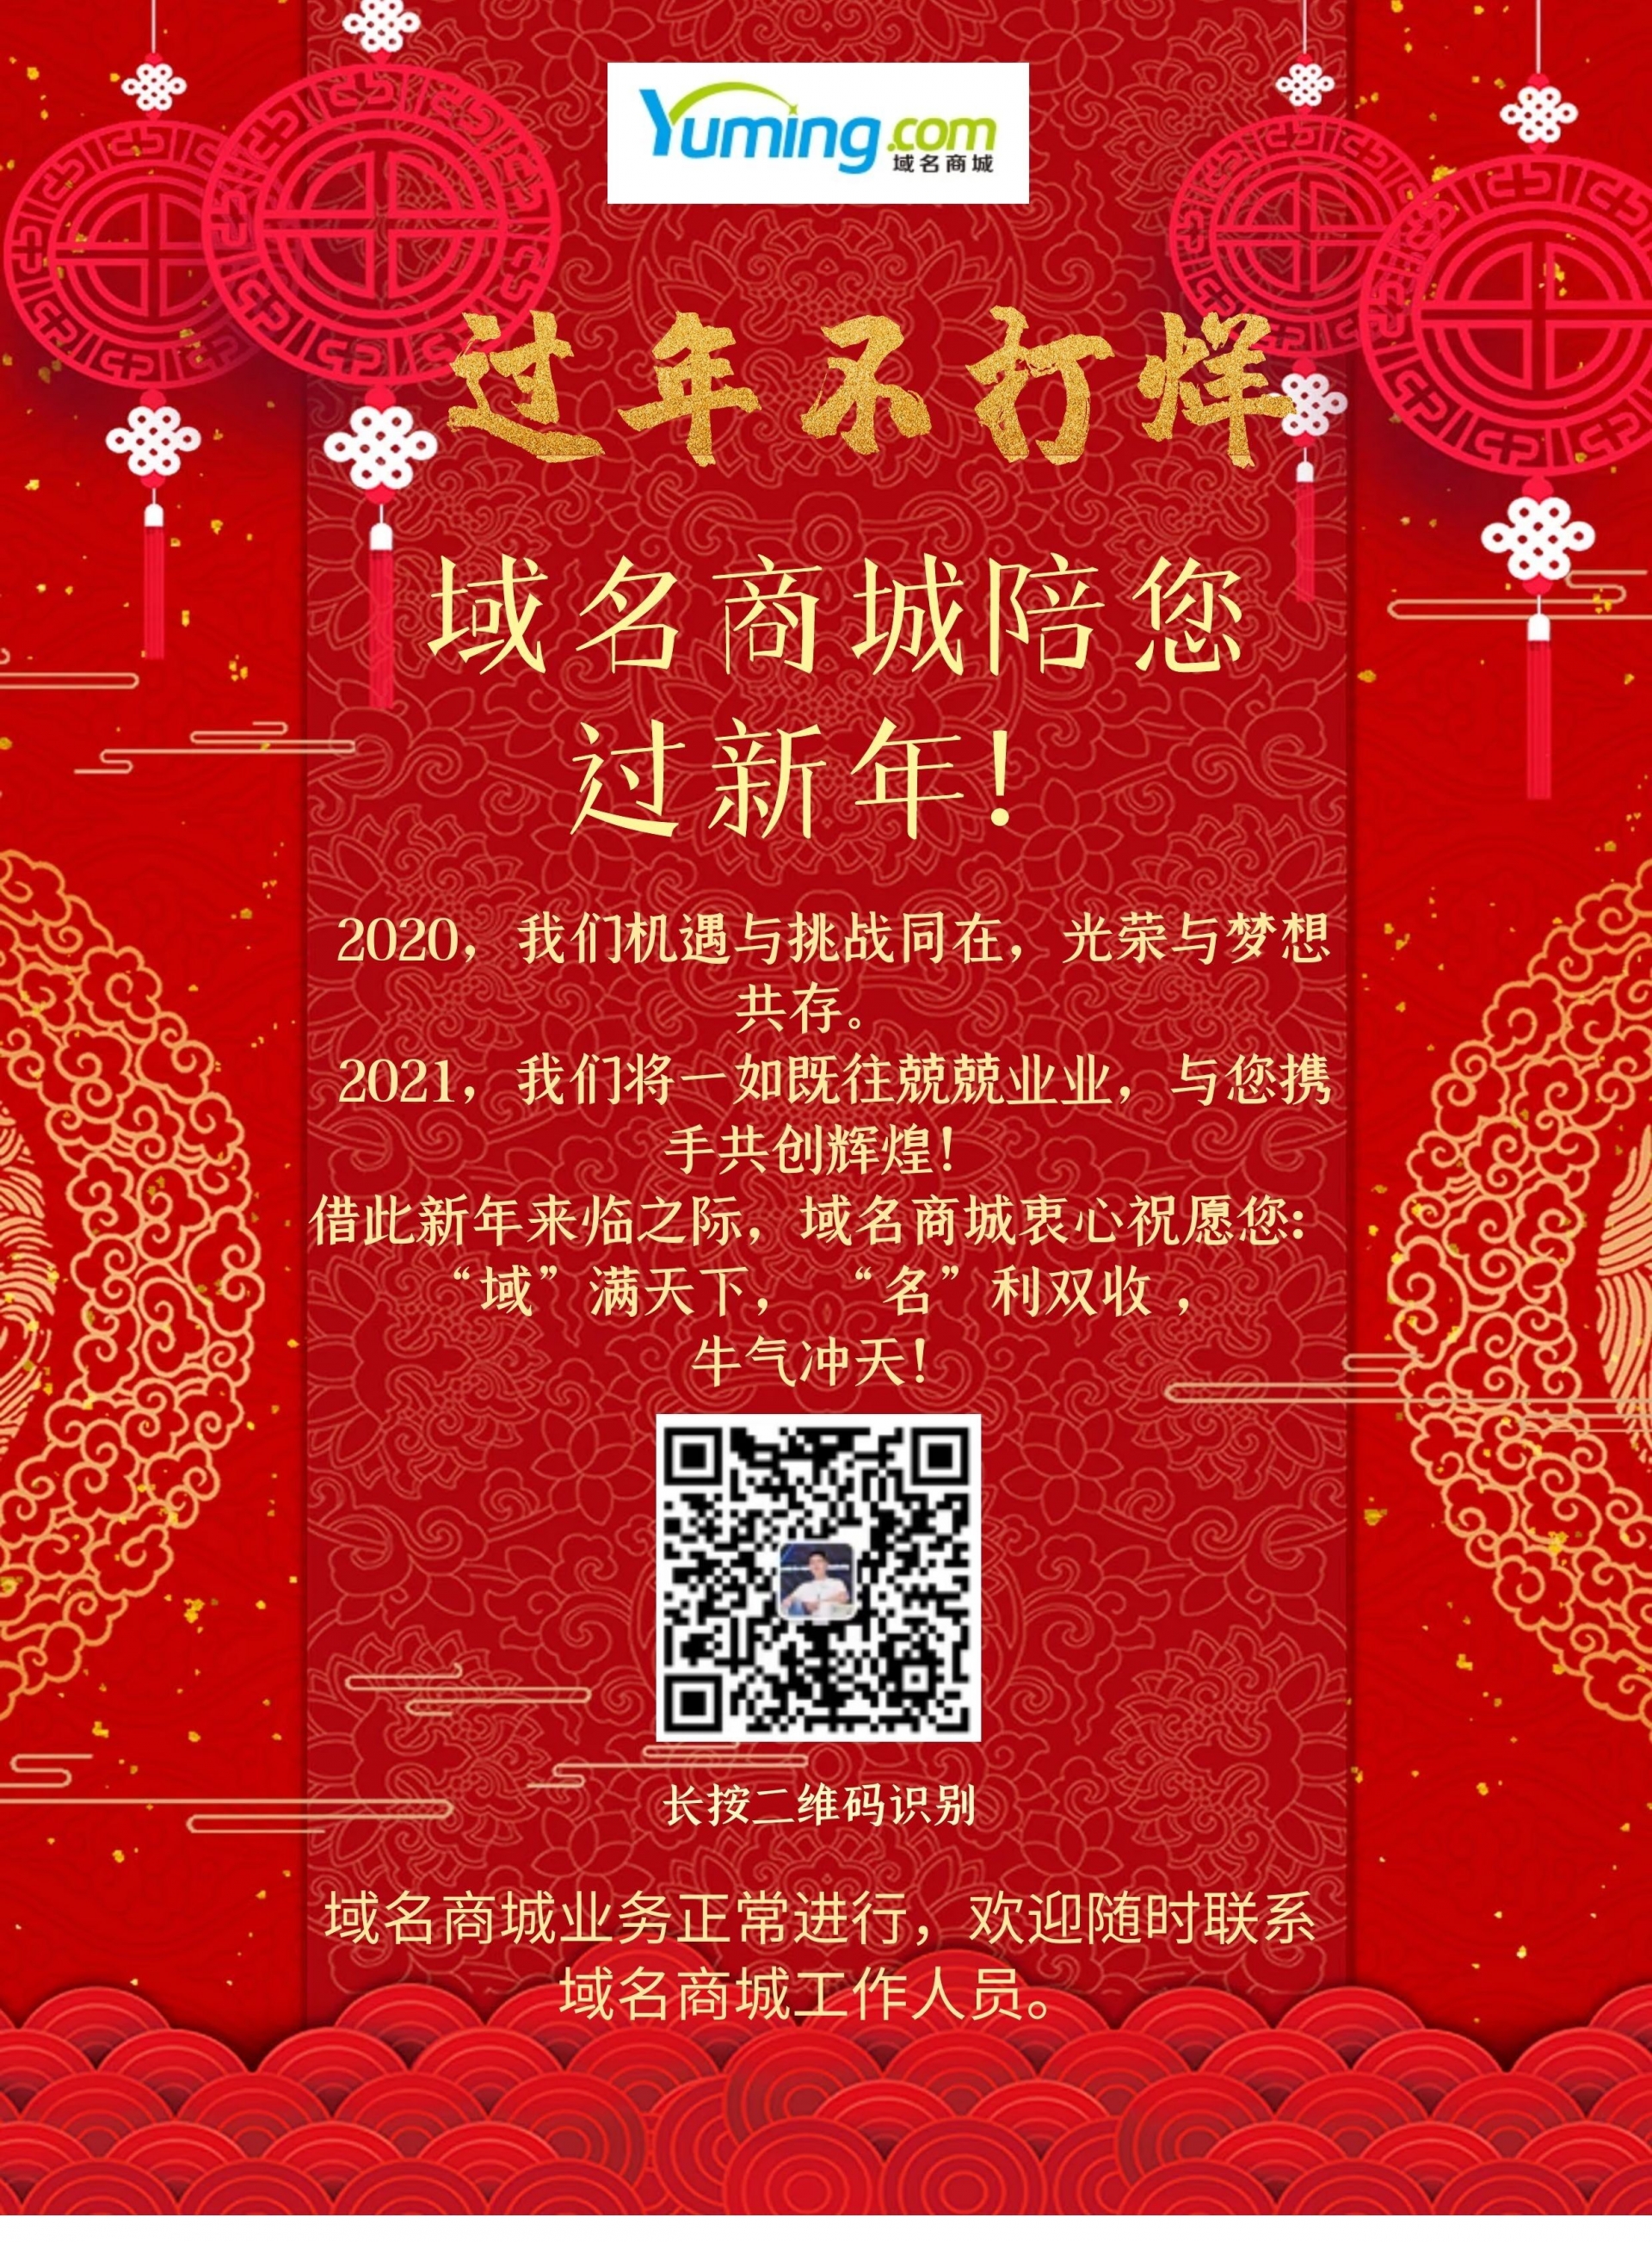 春节不打烊，Yuming.com陪您过新年！